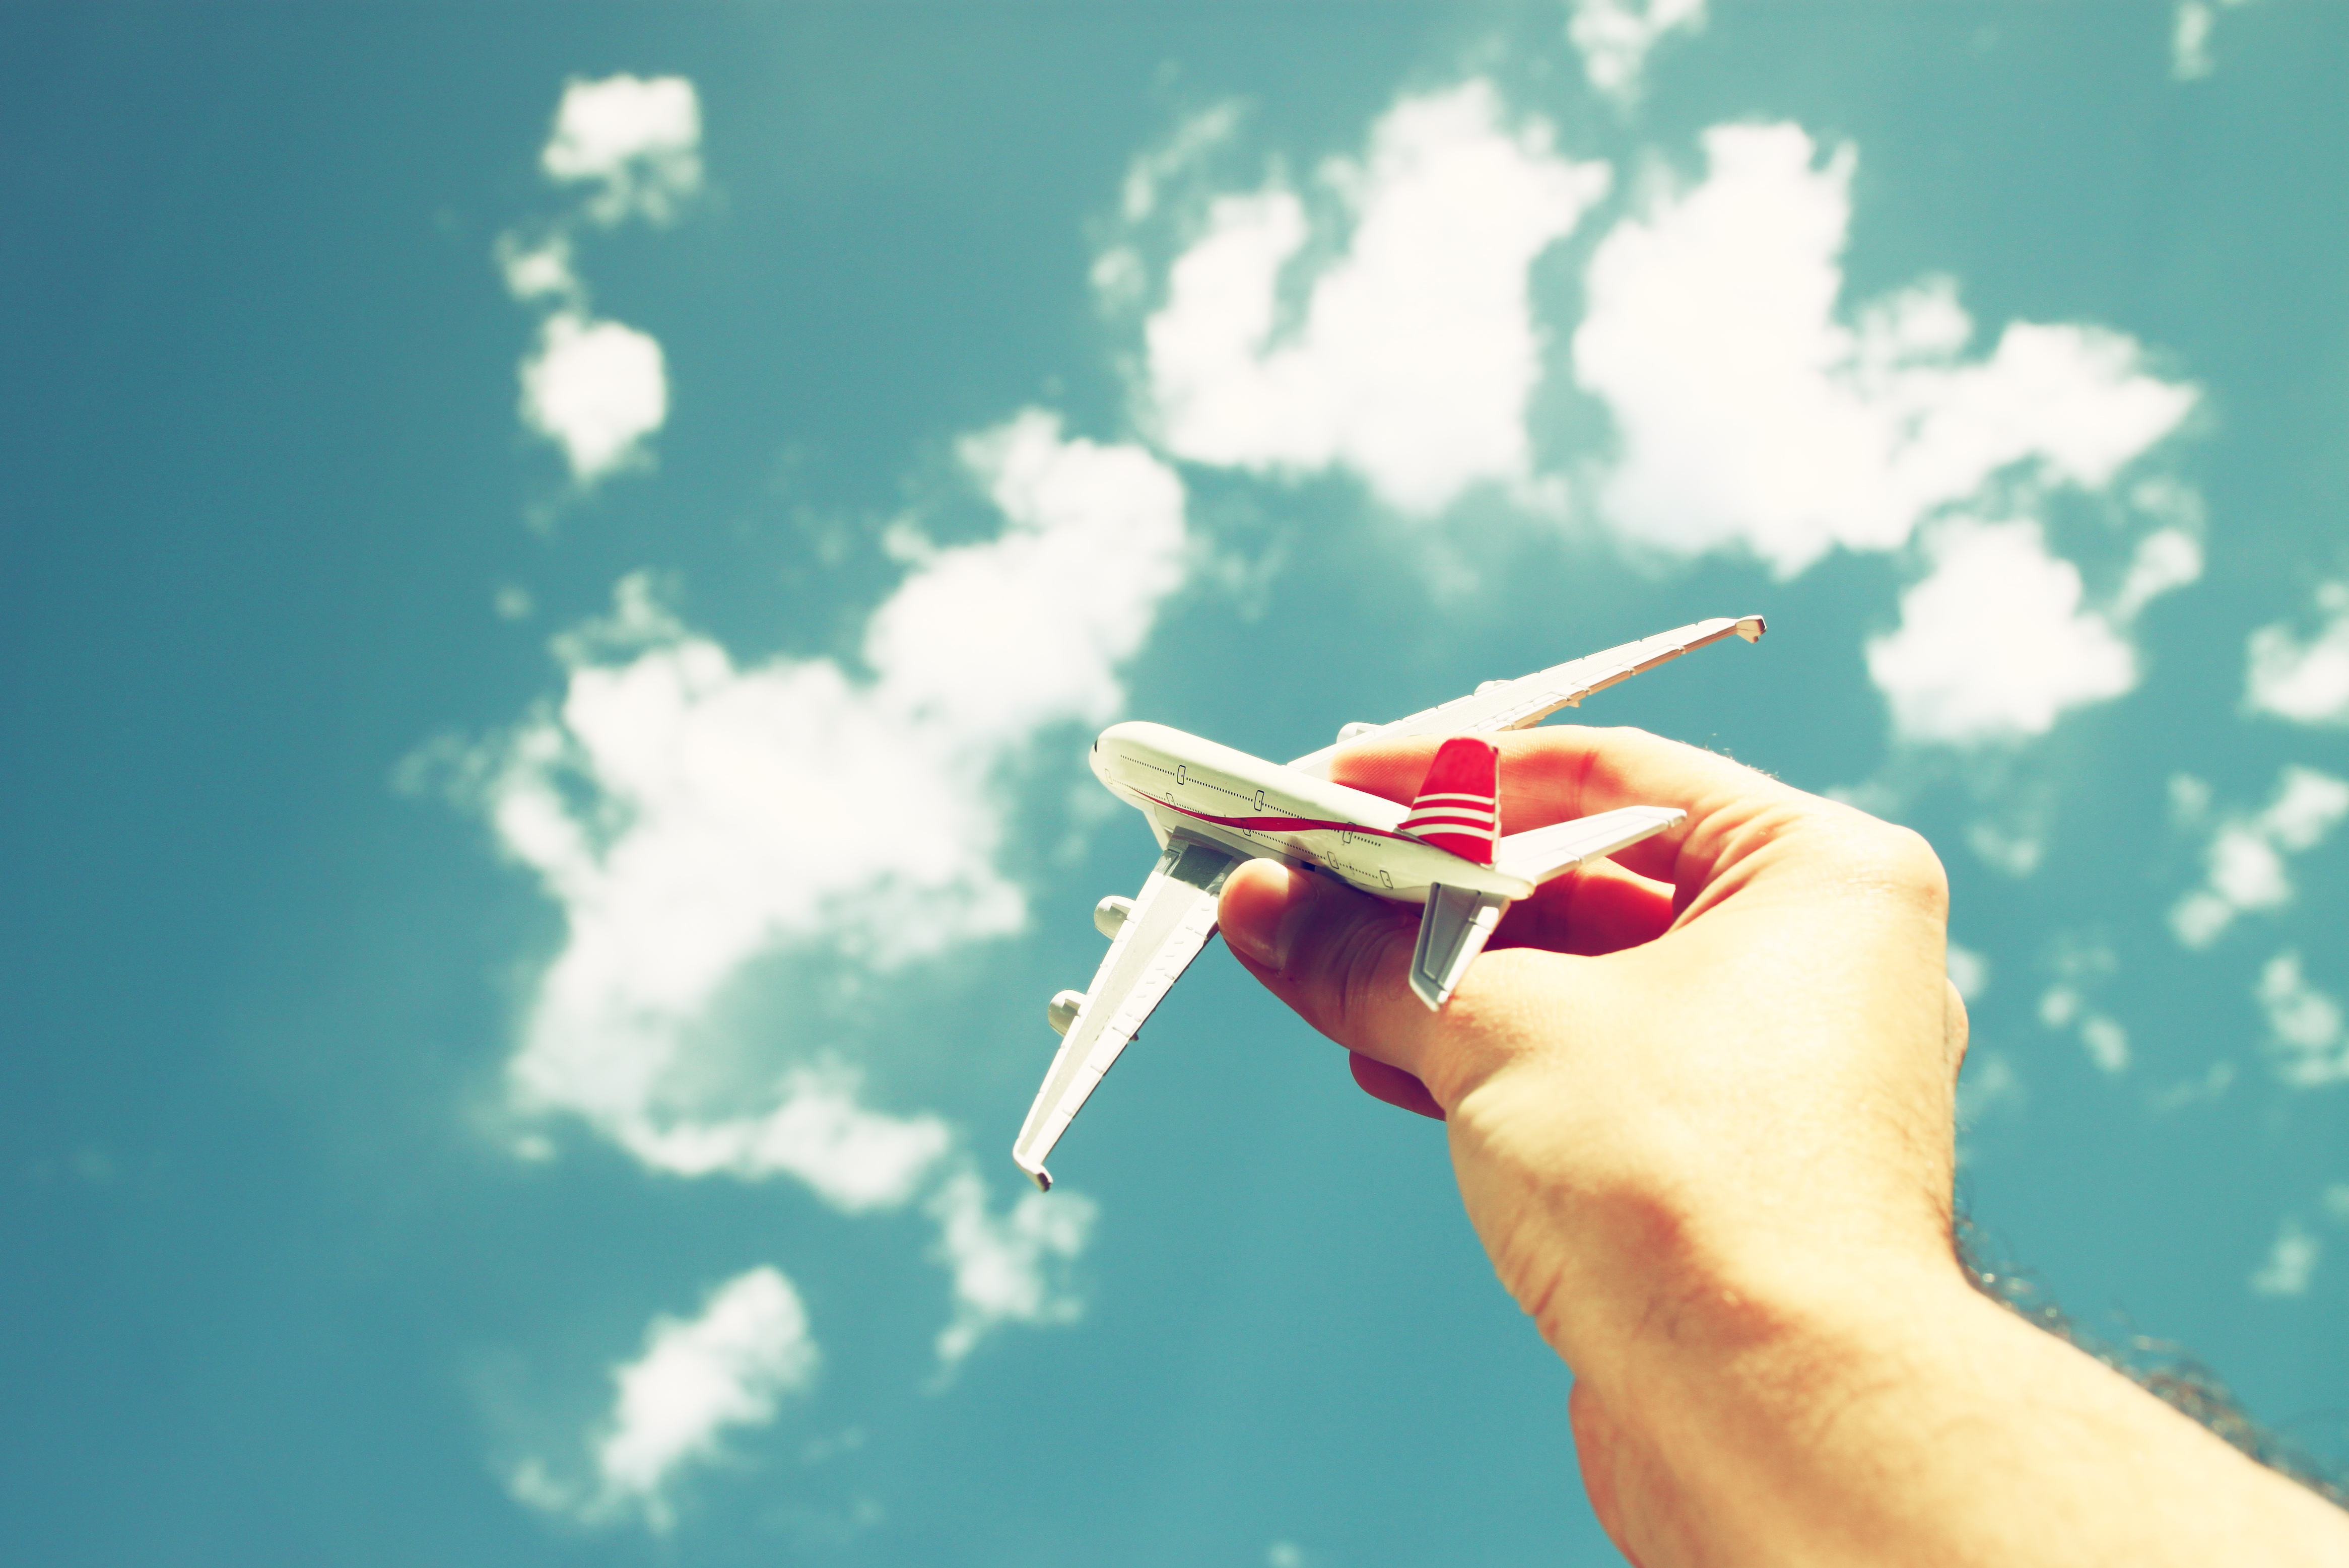 Бумажный самолетик детства. Самолетик на руке. Рука и самолет в небе. Бумажный самолетик в небе. Запуск бумажных самолетиков.